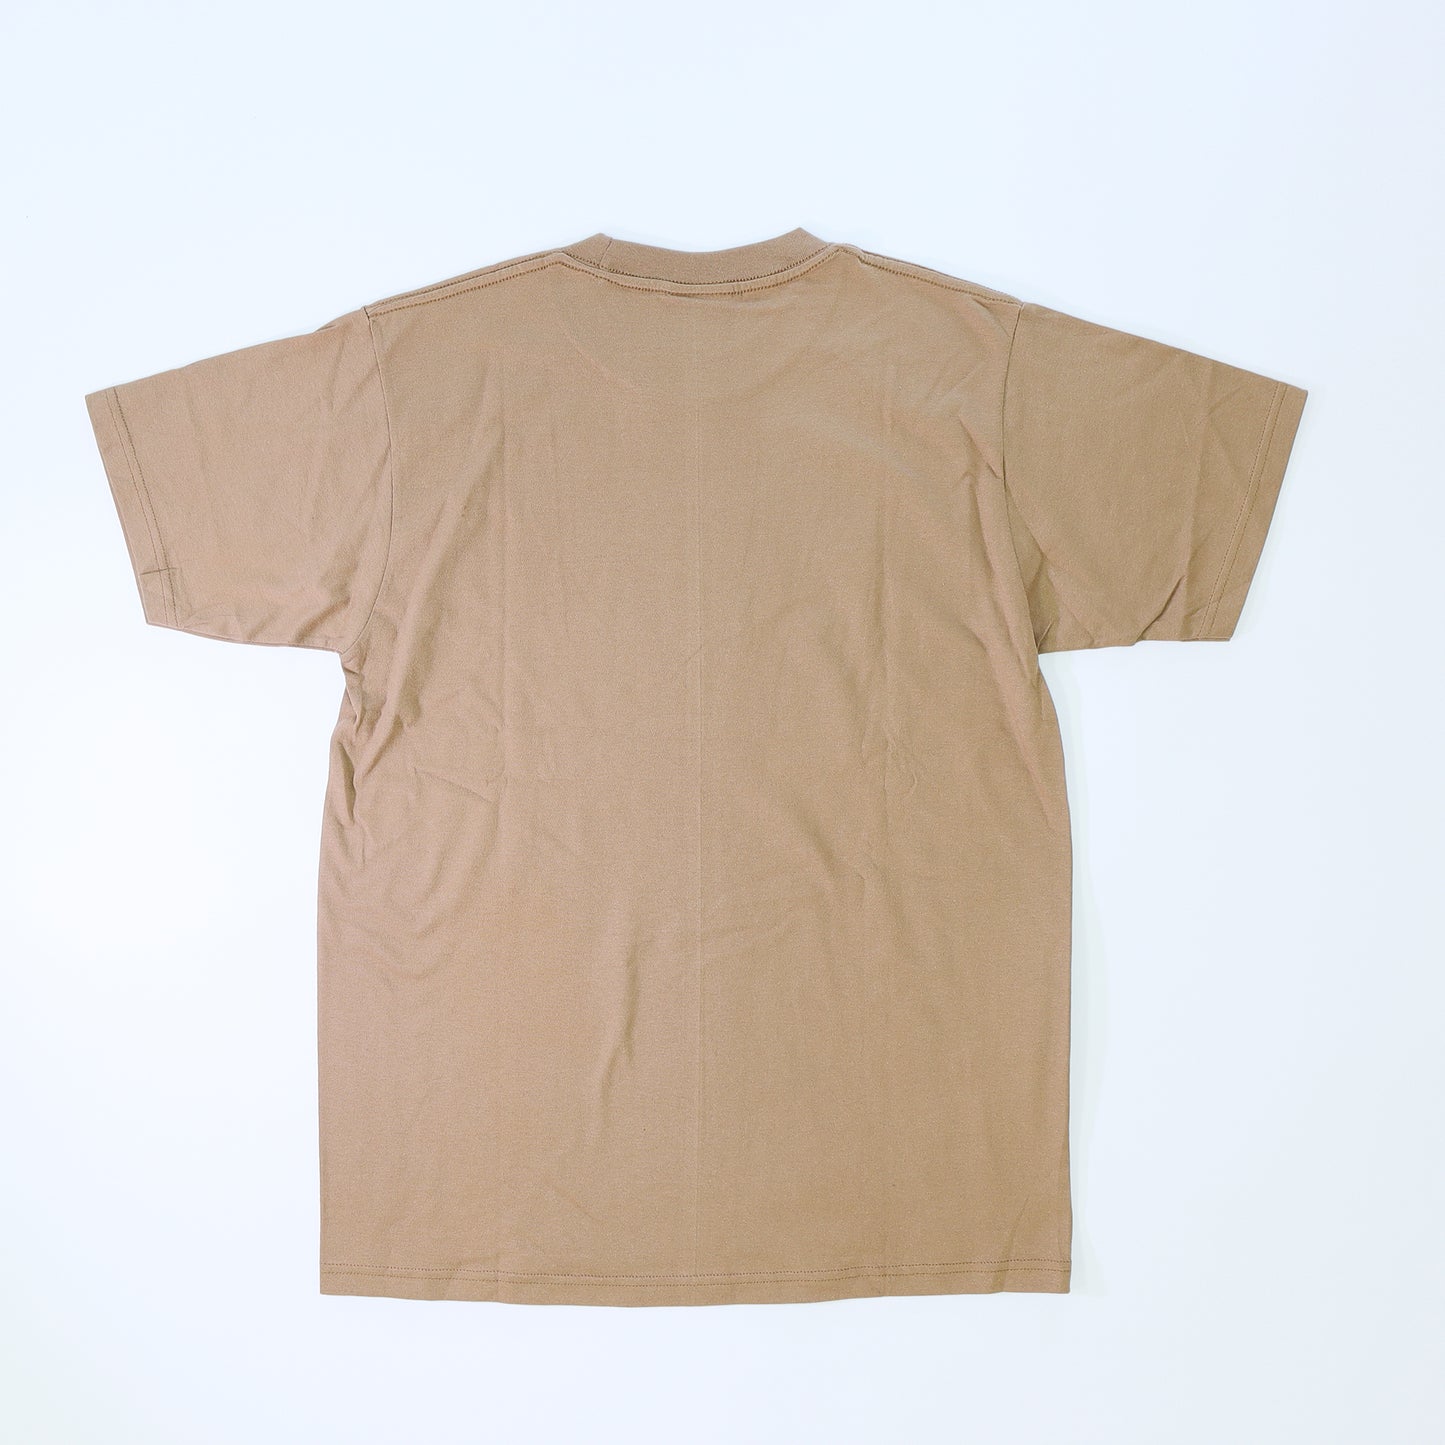 Cotton T-shirt (C15)